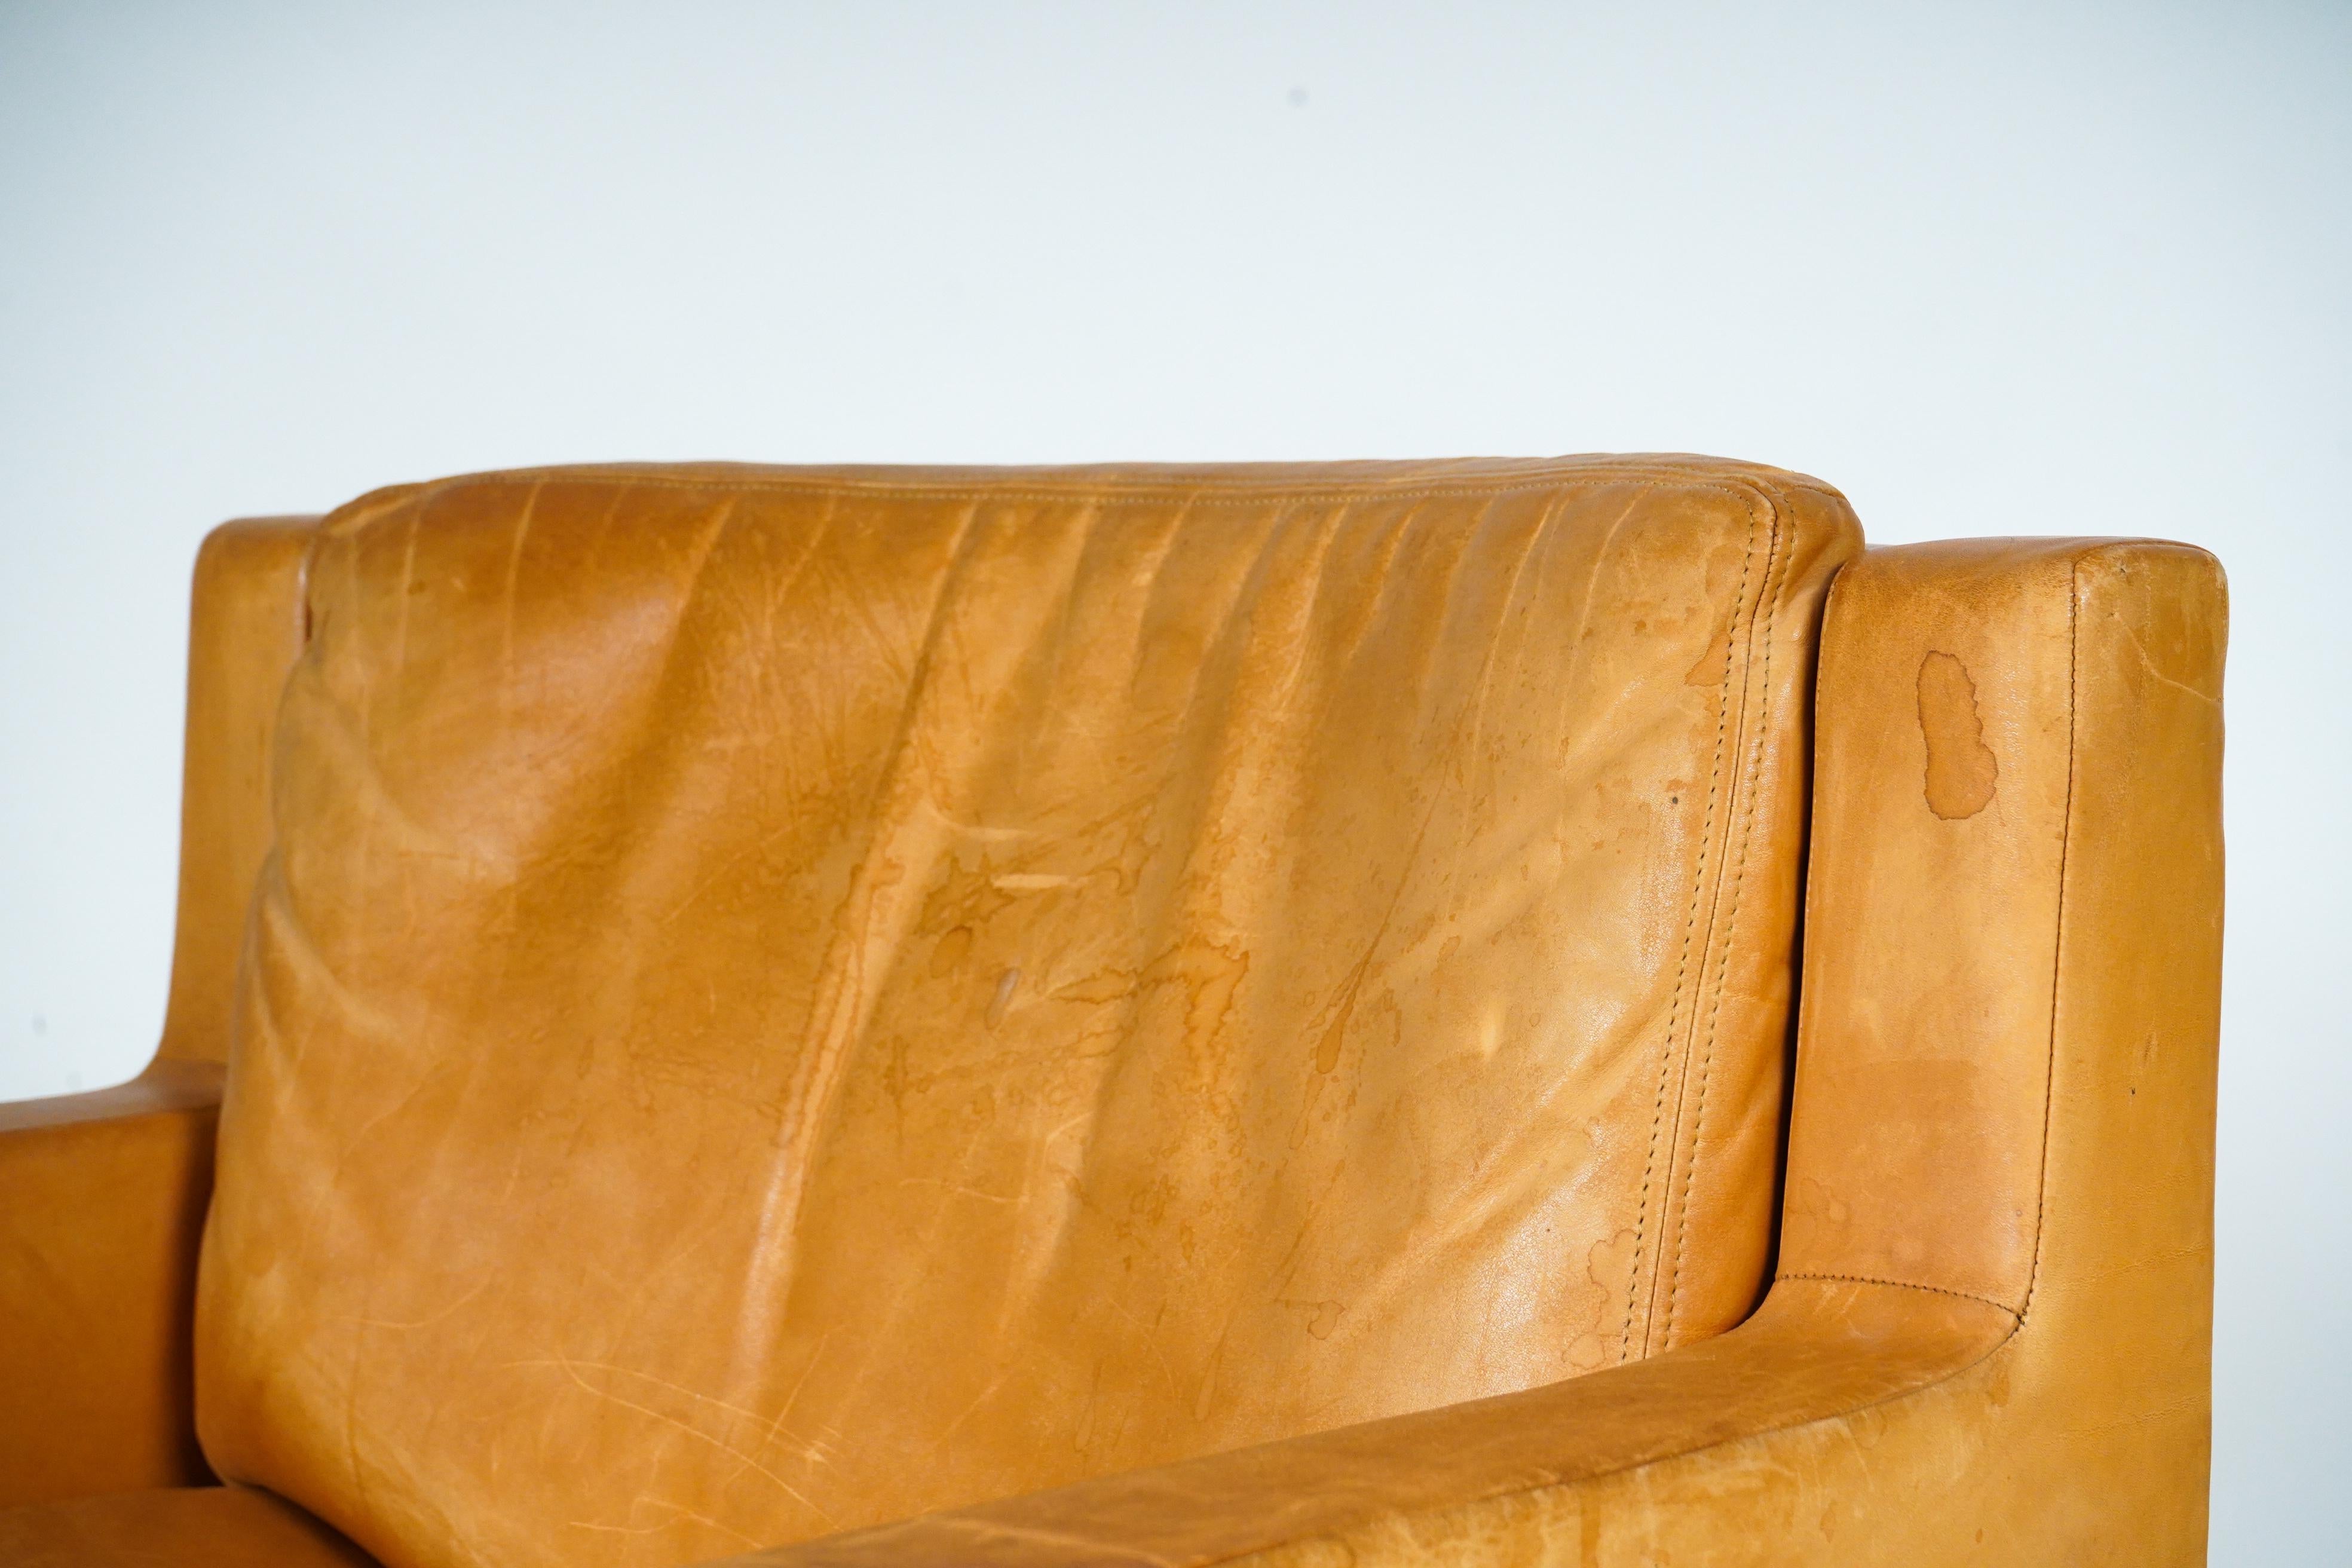 Dieser äußerst bequeme Loungesessel verbindet die Stärke und Schärfe von Metall mit der Wärme und Geschmeidigkeit von Naturleder. Der Stuhl fügt sich in eine moderne Einrichtung ebenso gut ein wie in eine antike. Das Schafsleder ist in recht gutem